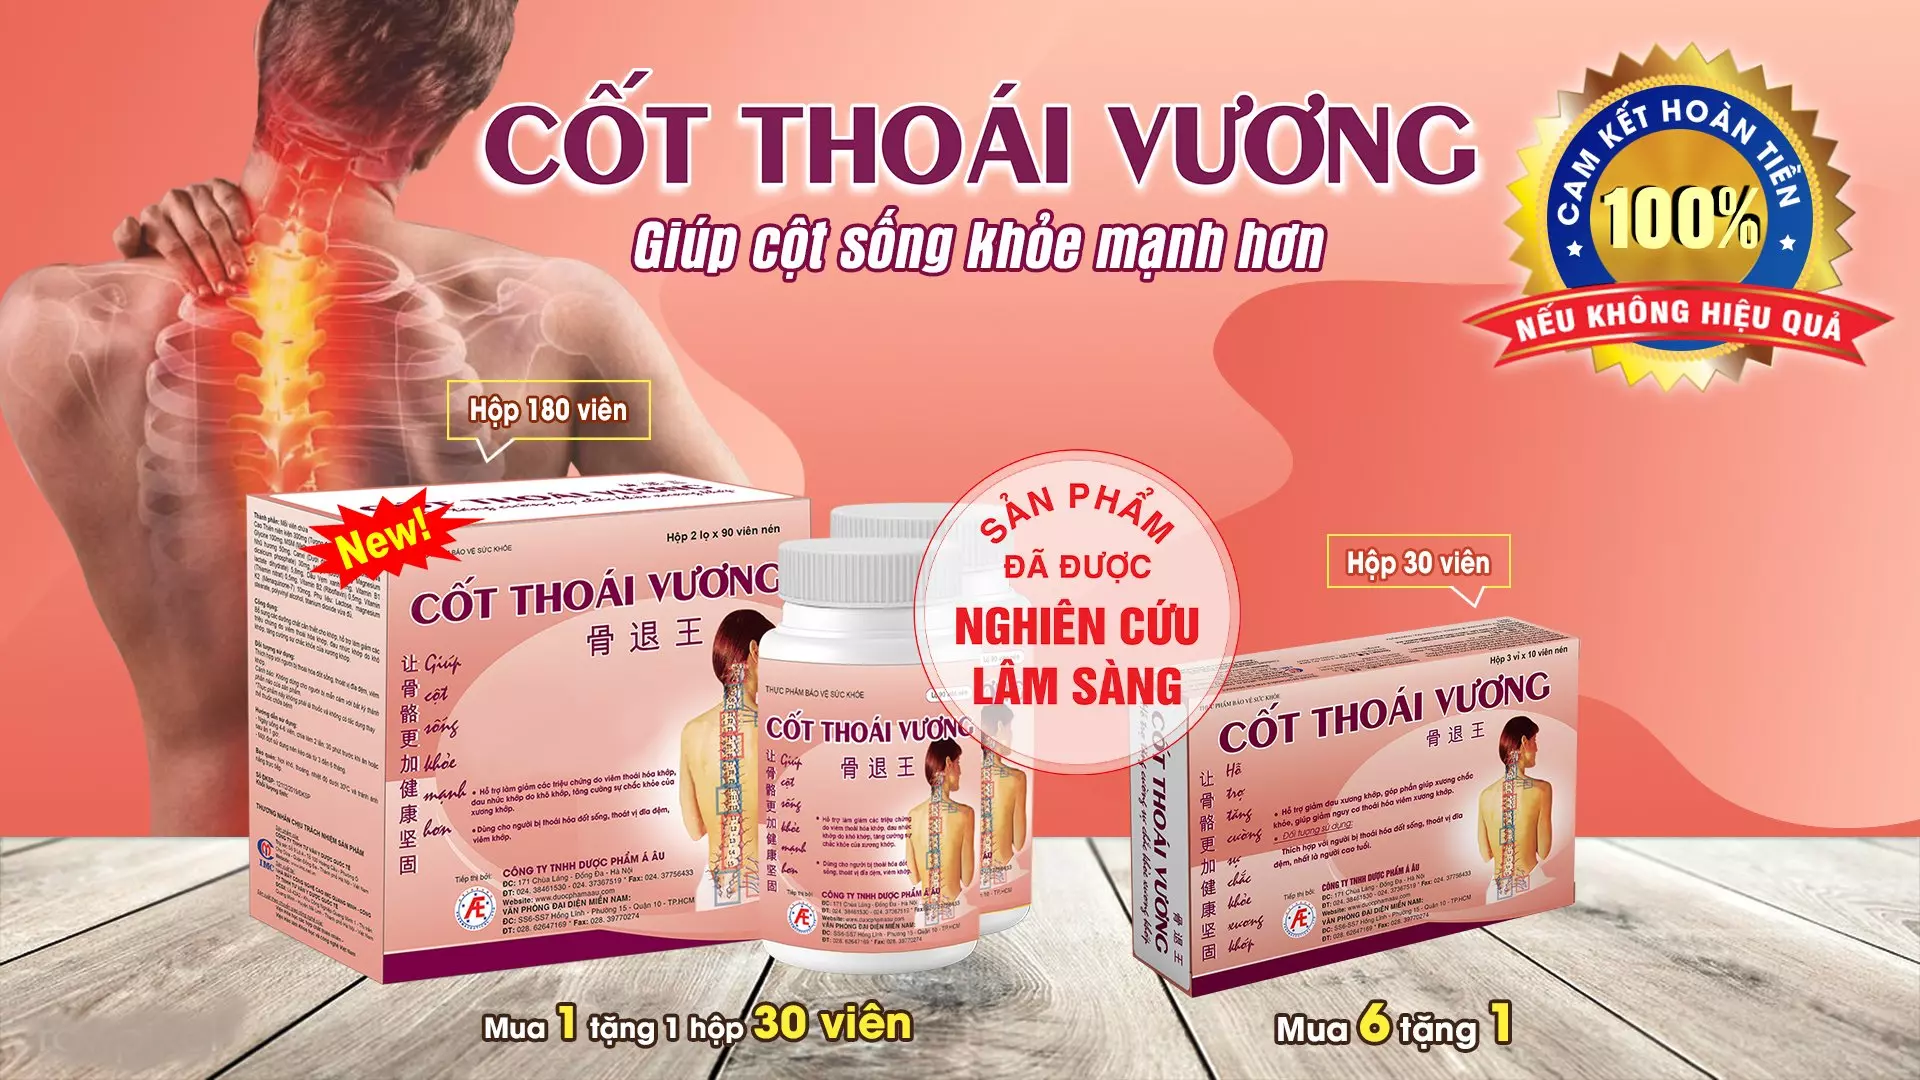 Ho-tro-giam-dau-lung-hieu-qua-nho-san-pham-thao-duoc-Cot-Thoai-Vuong (2).webp